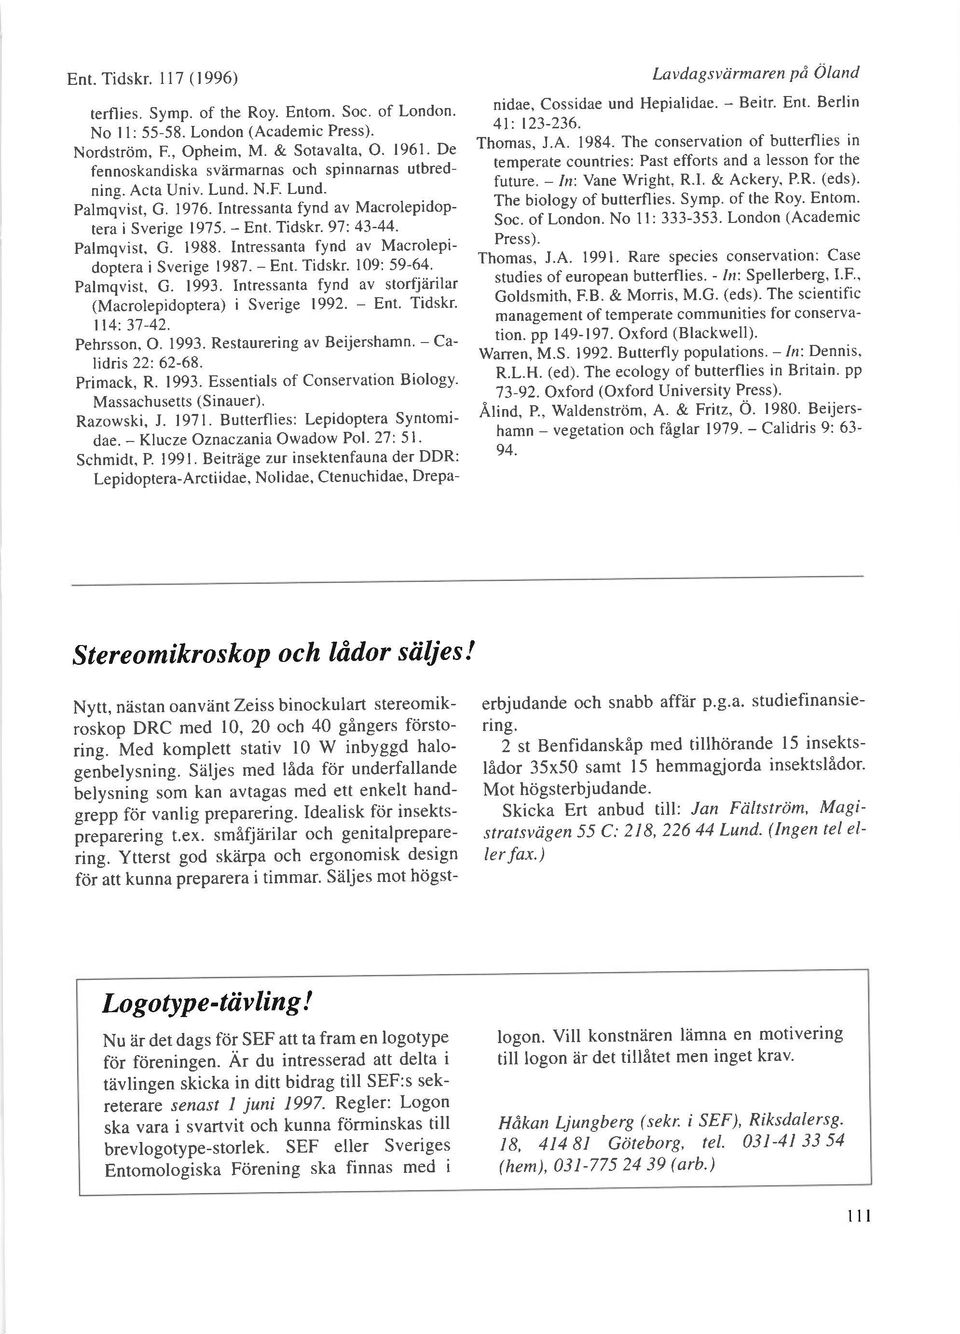 Intressanta fynd av Macrolepidoptera i Sverige 1987. - Ent. Tidskr. 109: 59-64. Palmqvist, G. 1993. Intressanta fynd av storfjarilar (Macrolepidoptera) i Sverige 1992. - Ent. Tidskr. ll4: 37-42.